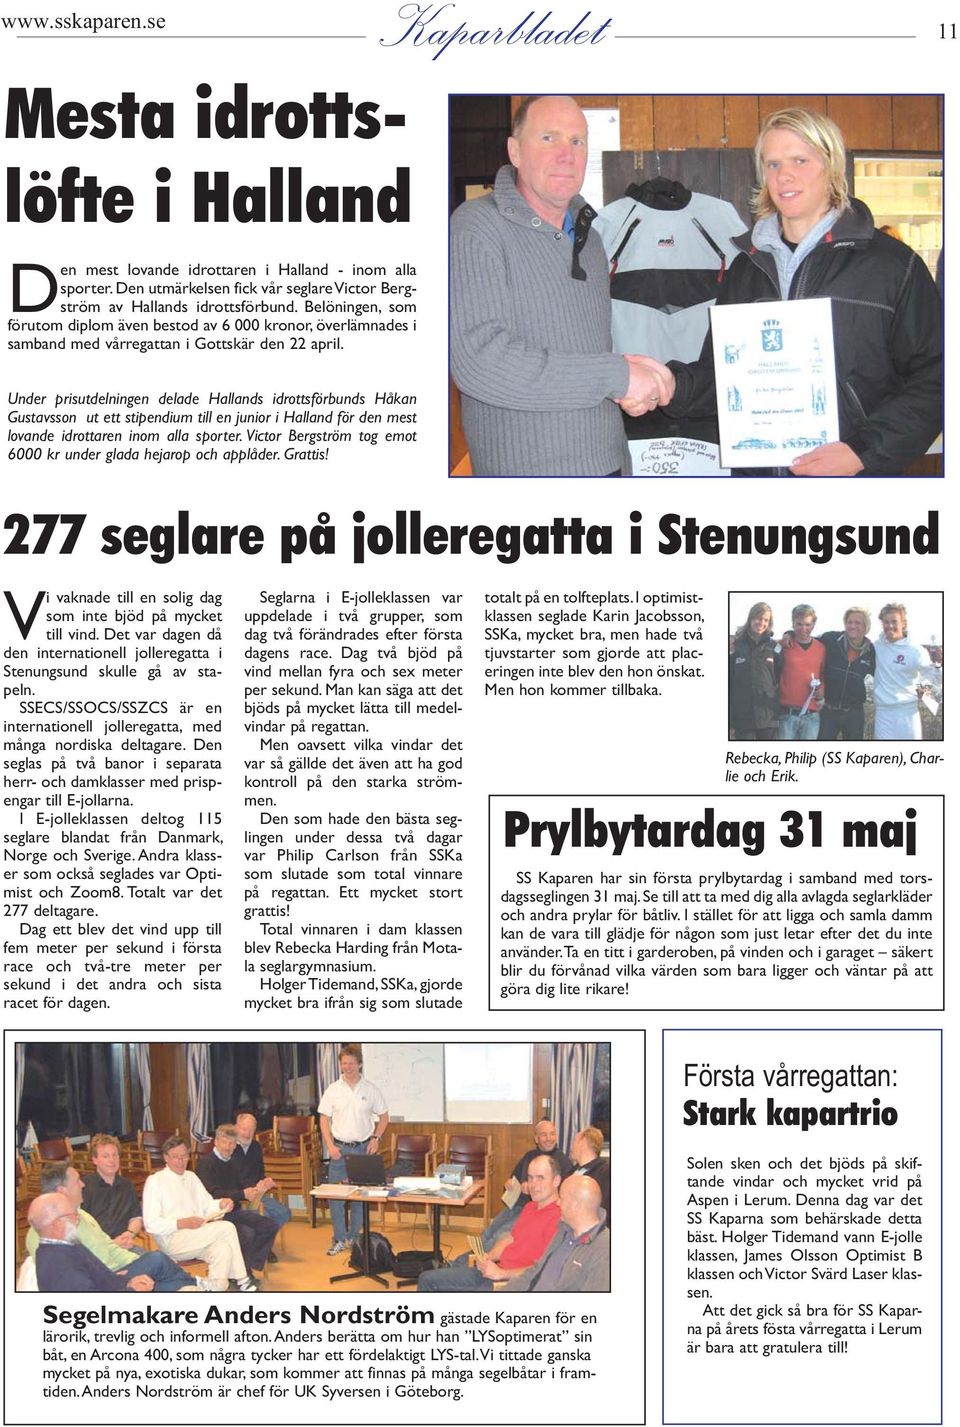 Under prisutdelningen delade Hallands idrottsförbunds Håkan Gustavsson ut ett stipendium till en junior i Halland för den mest lovande idrottaren inom alla sporter.